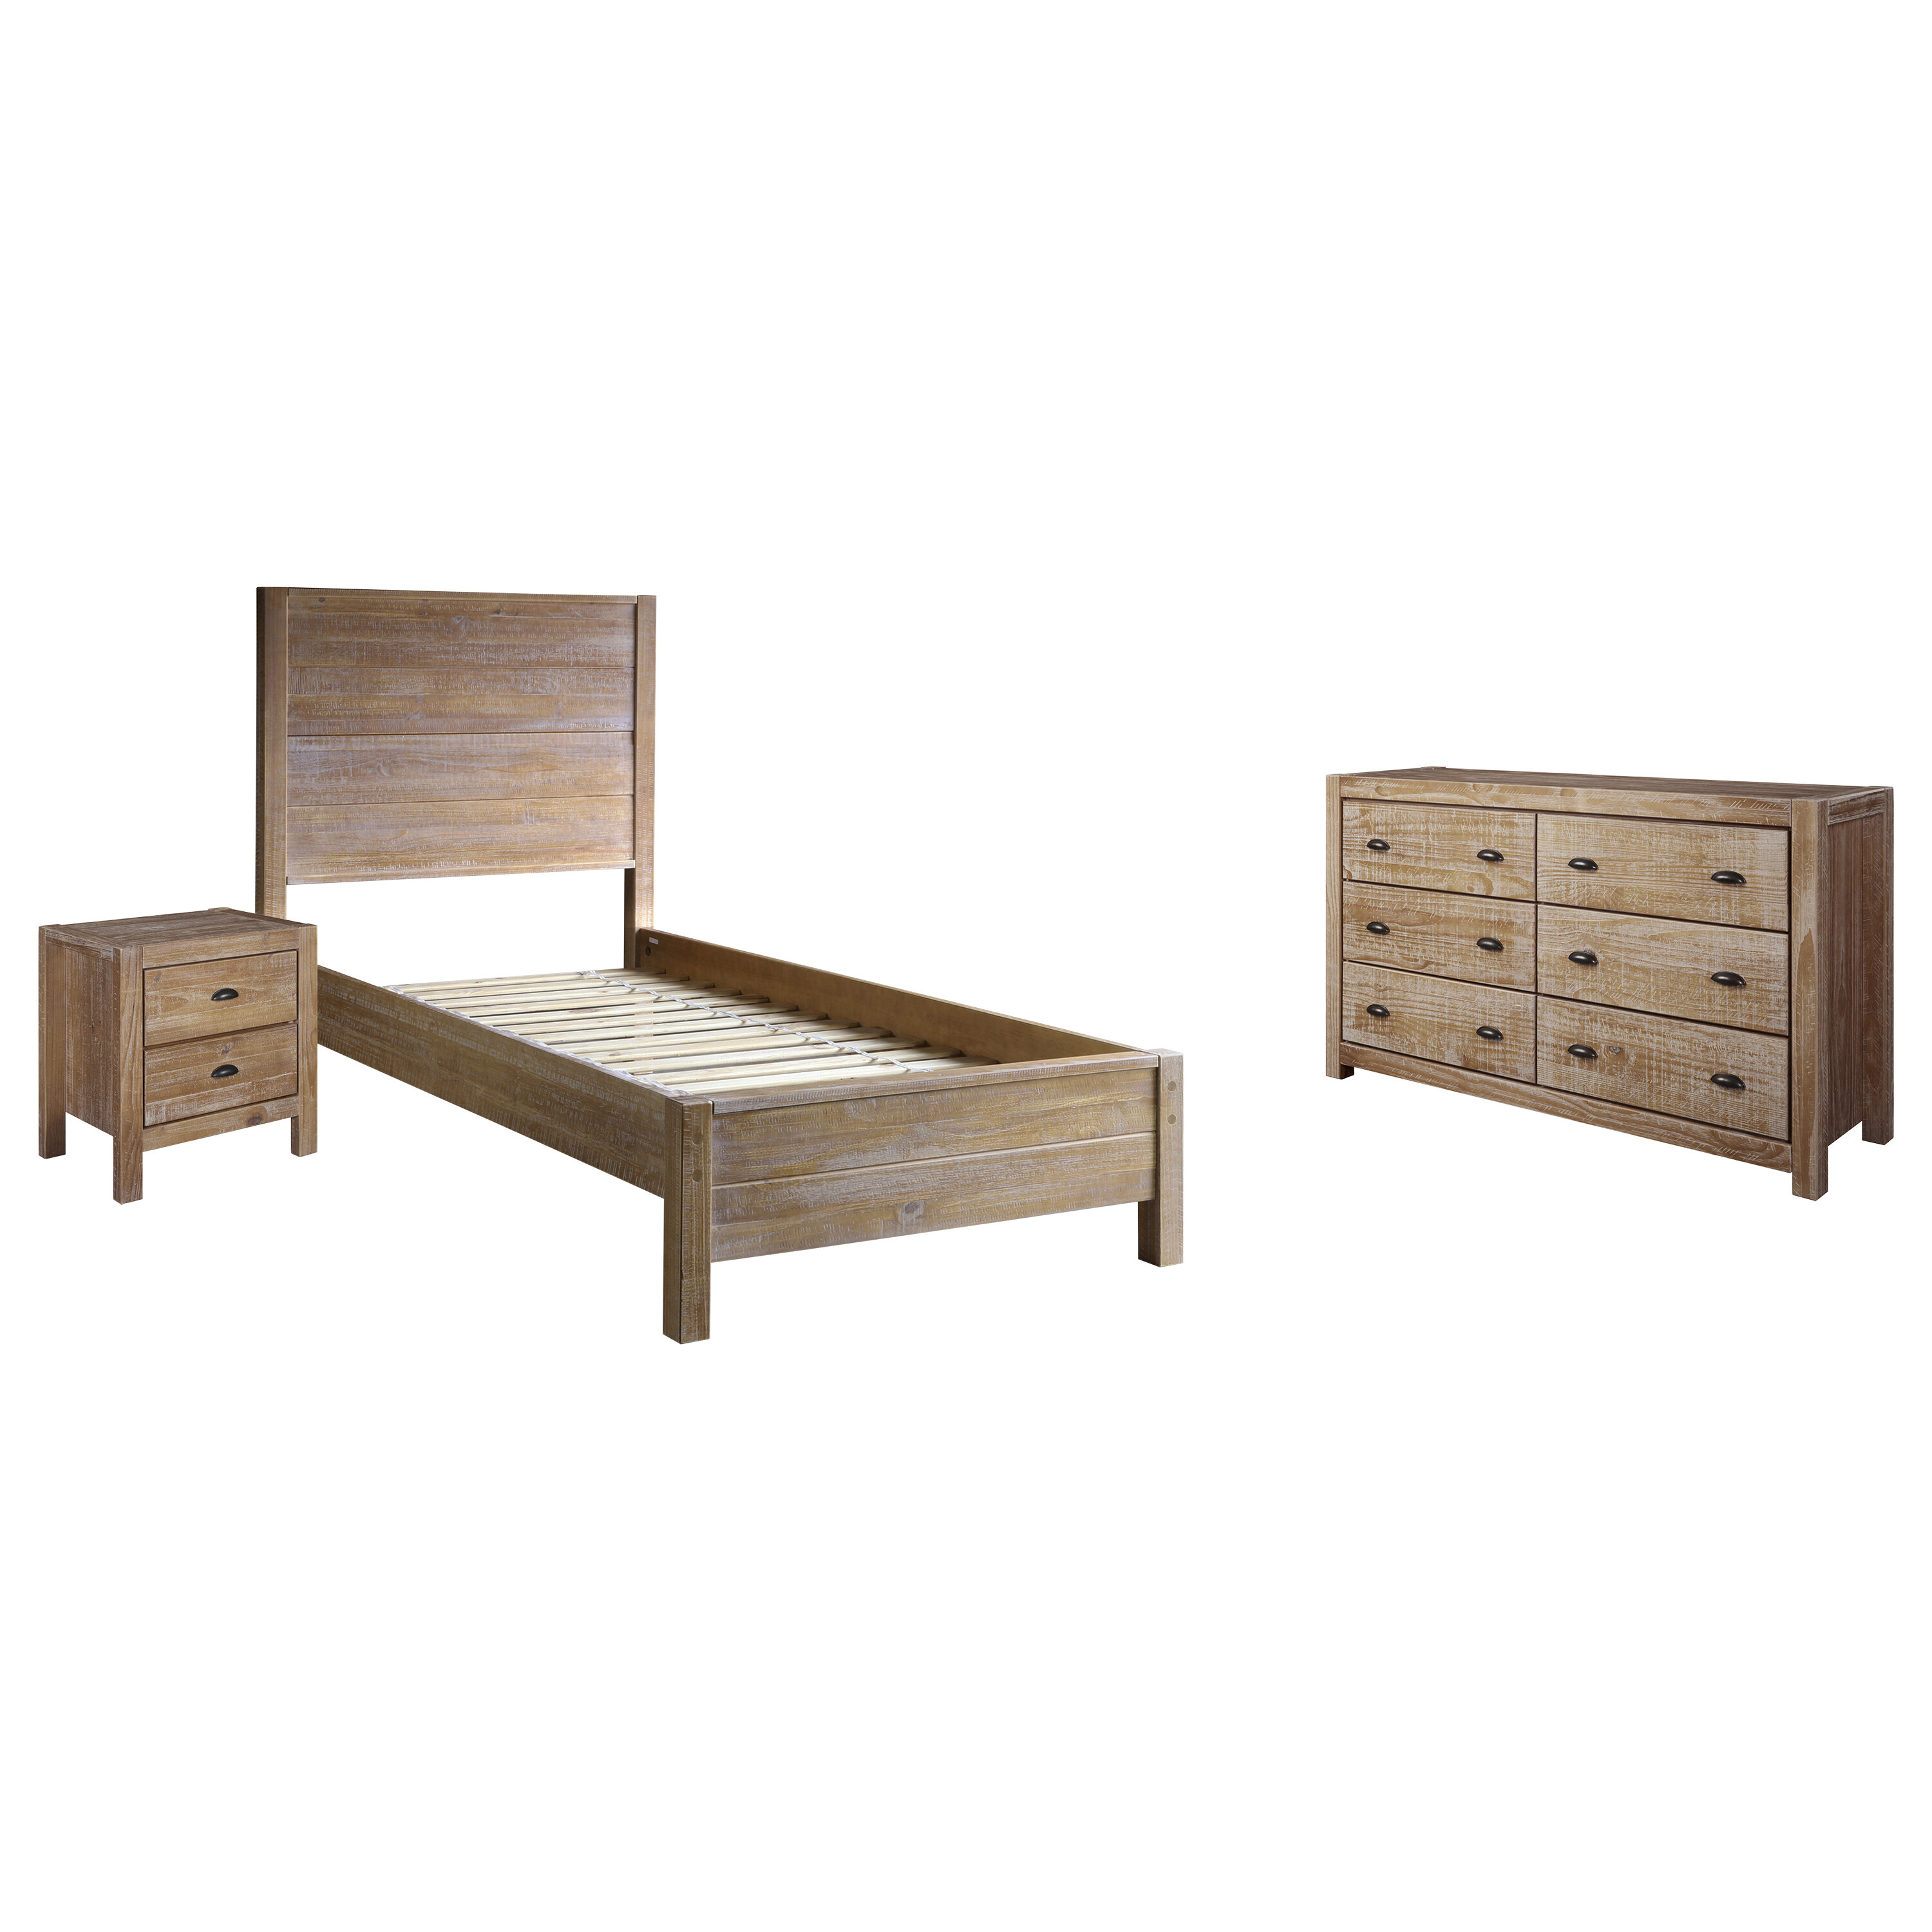 Solid Wood Standard 3 Piece Configurable Bedroom Set